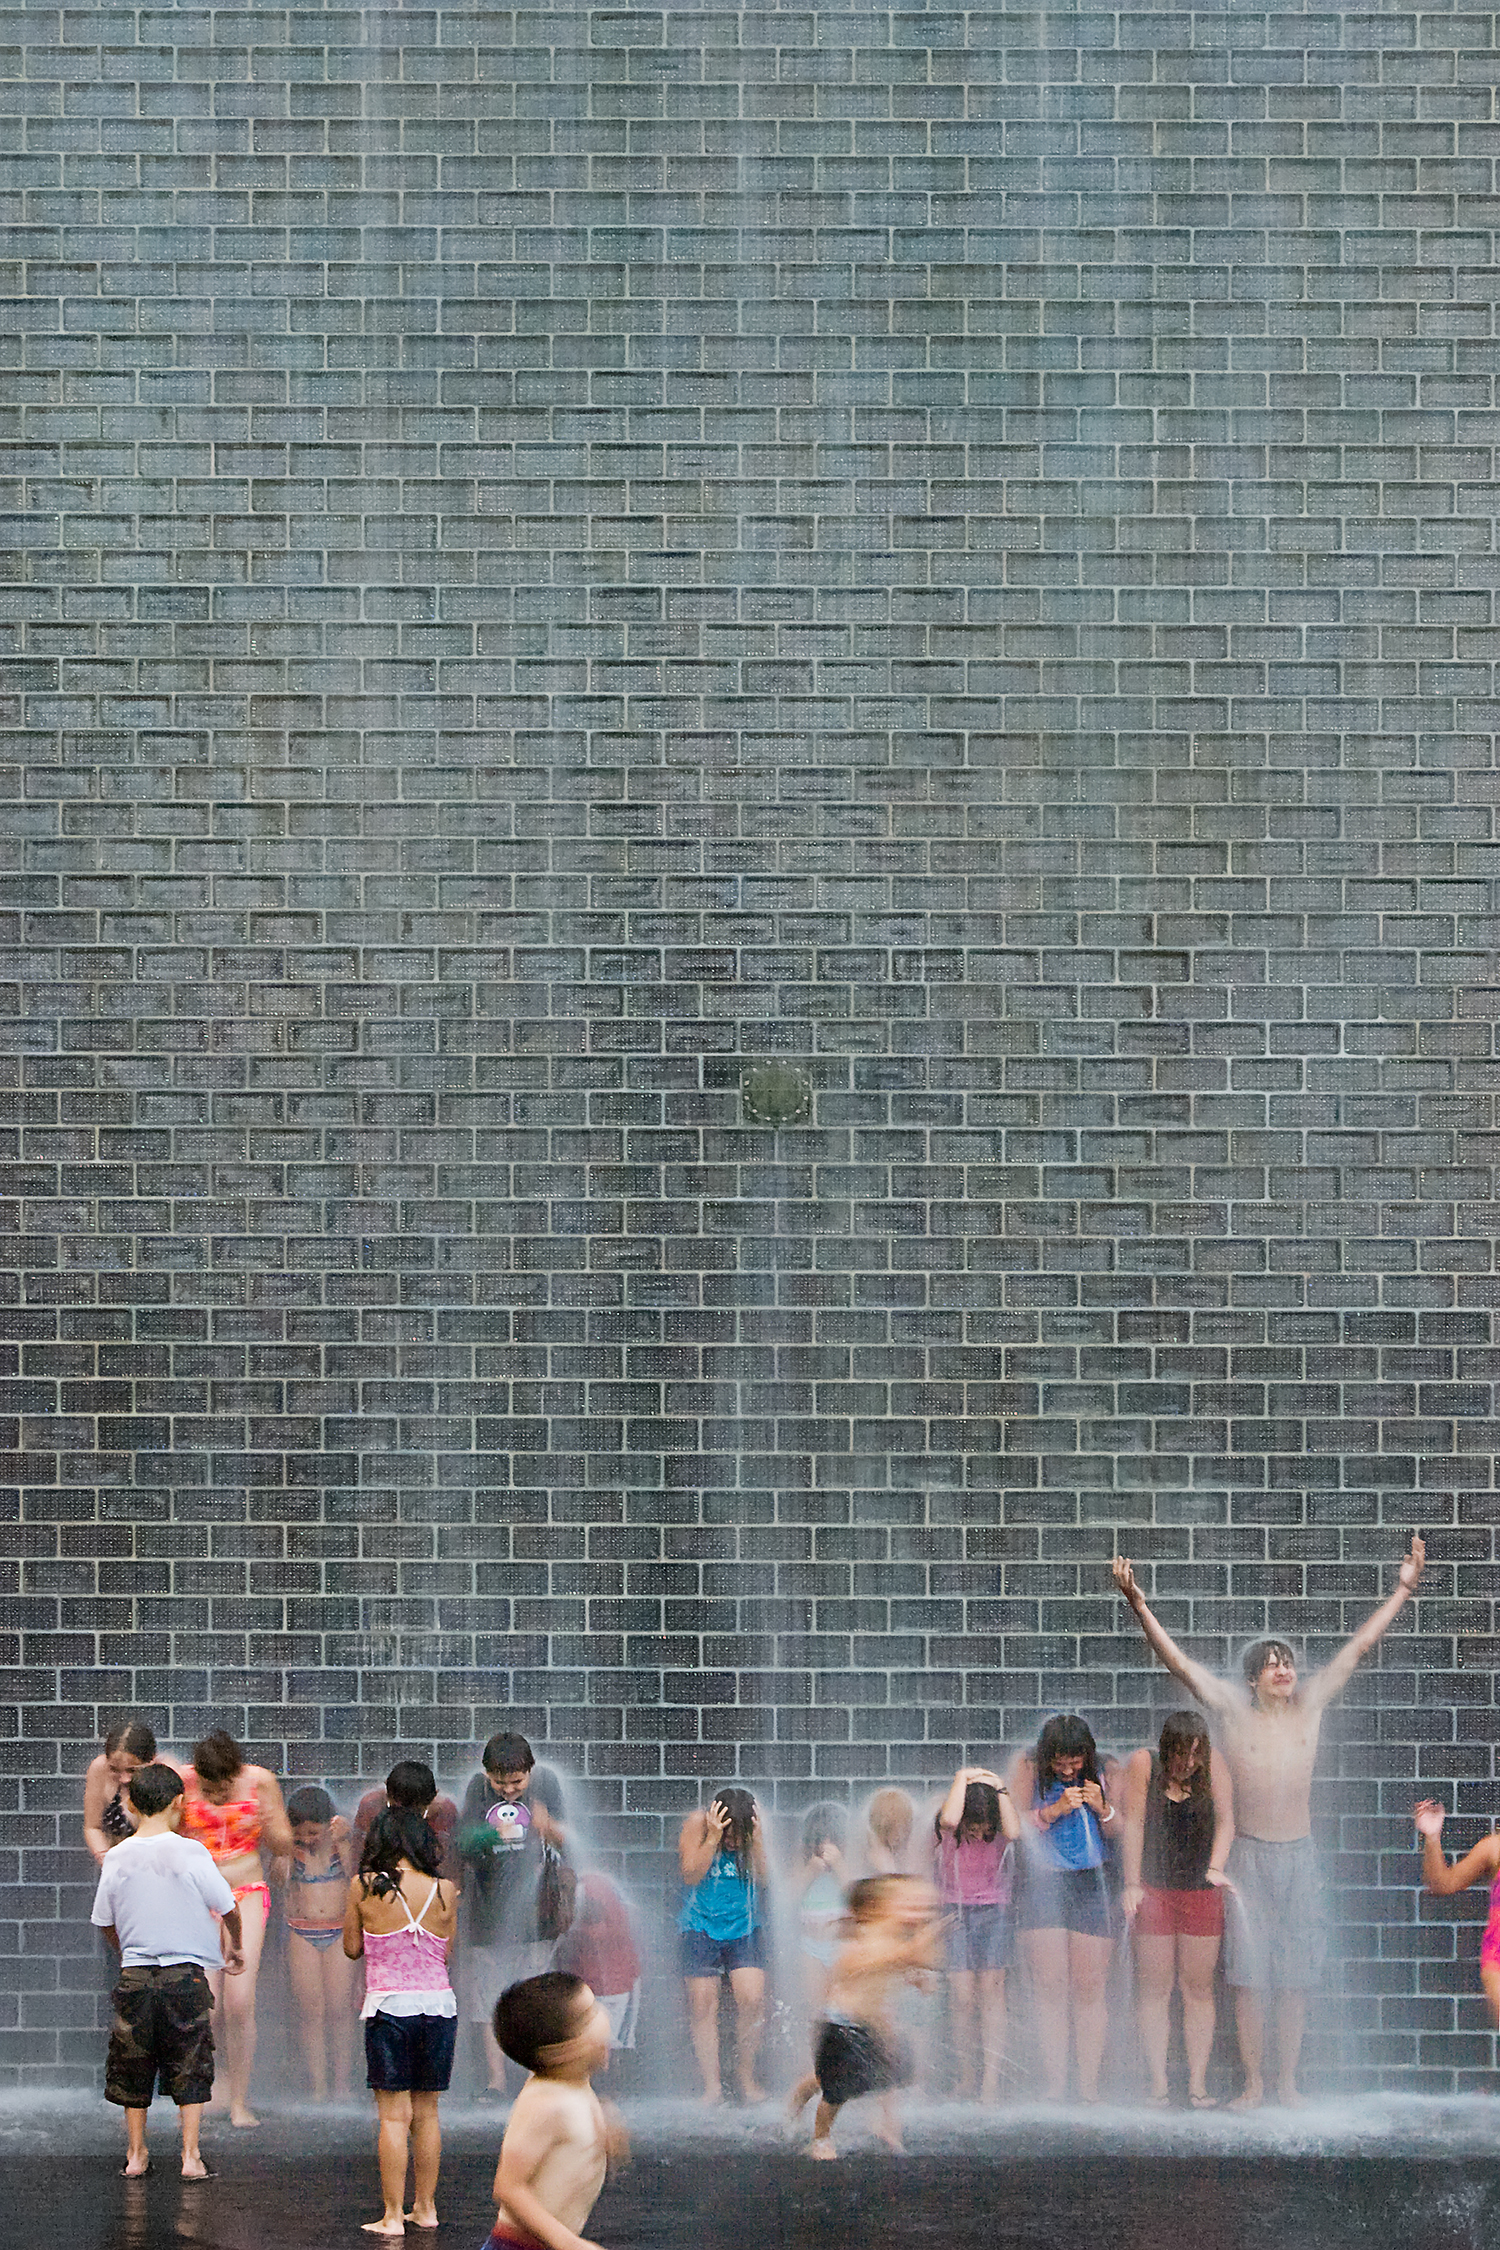 Crown Fountain / Chicago IL / Krueck & Sexton Architects